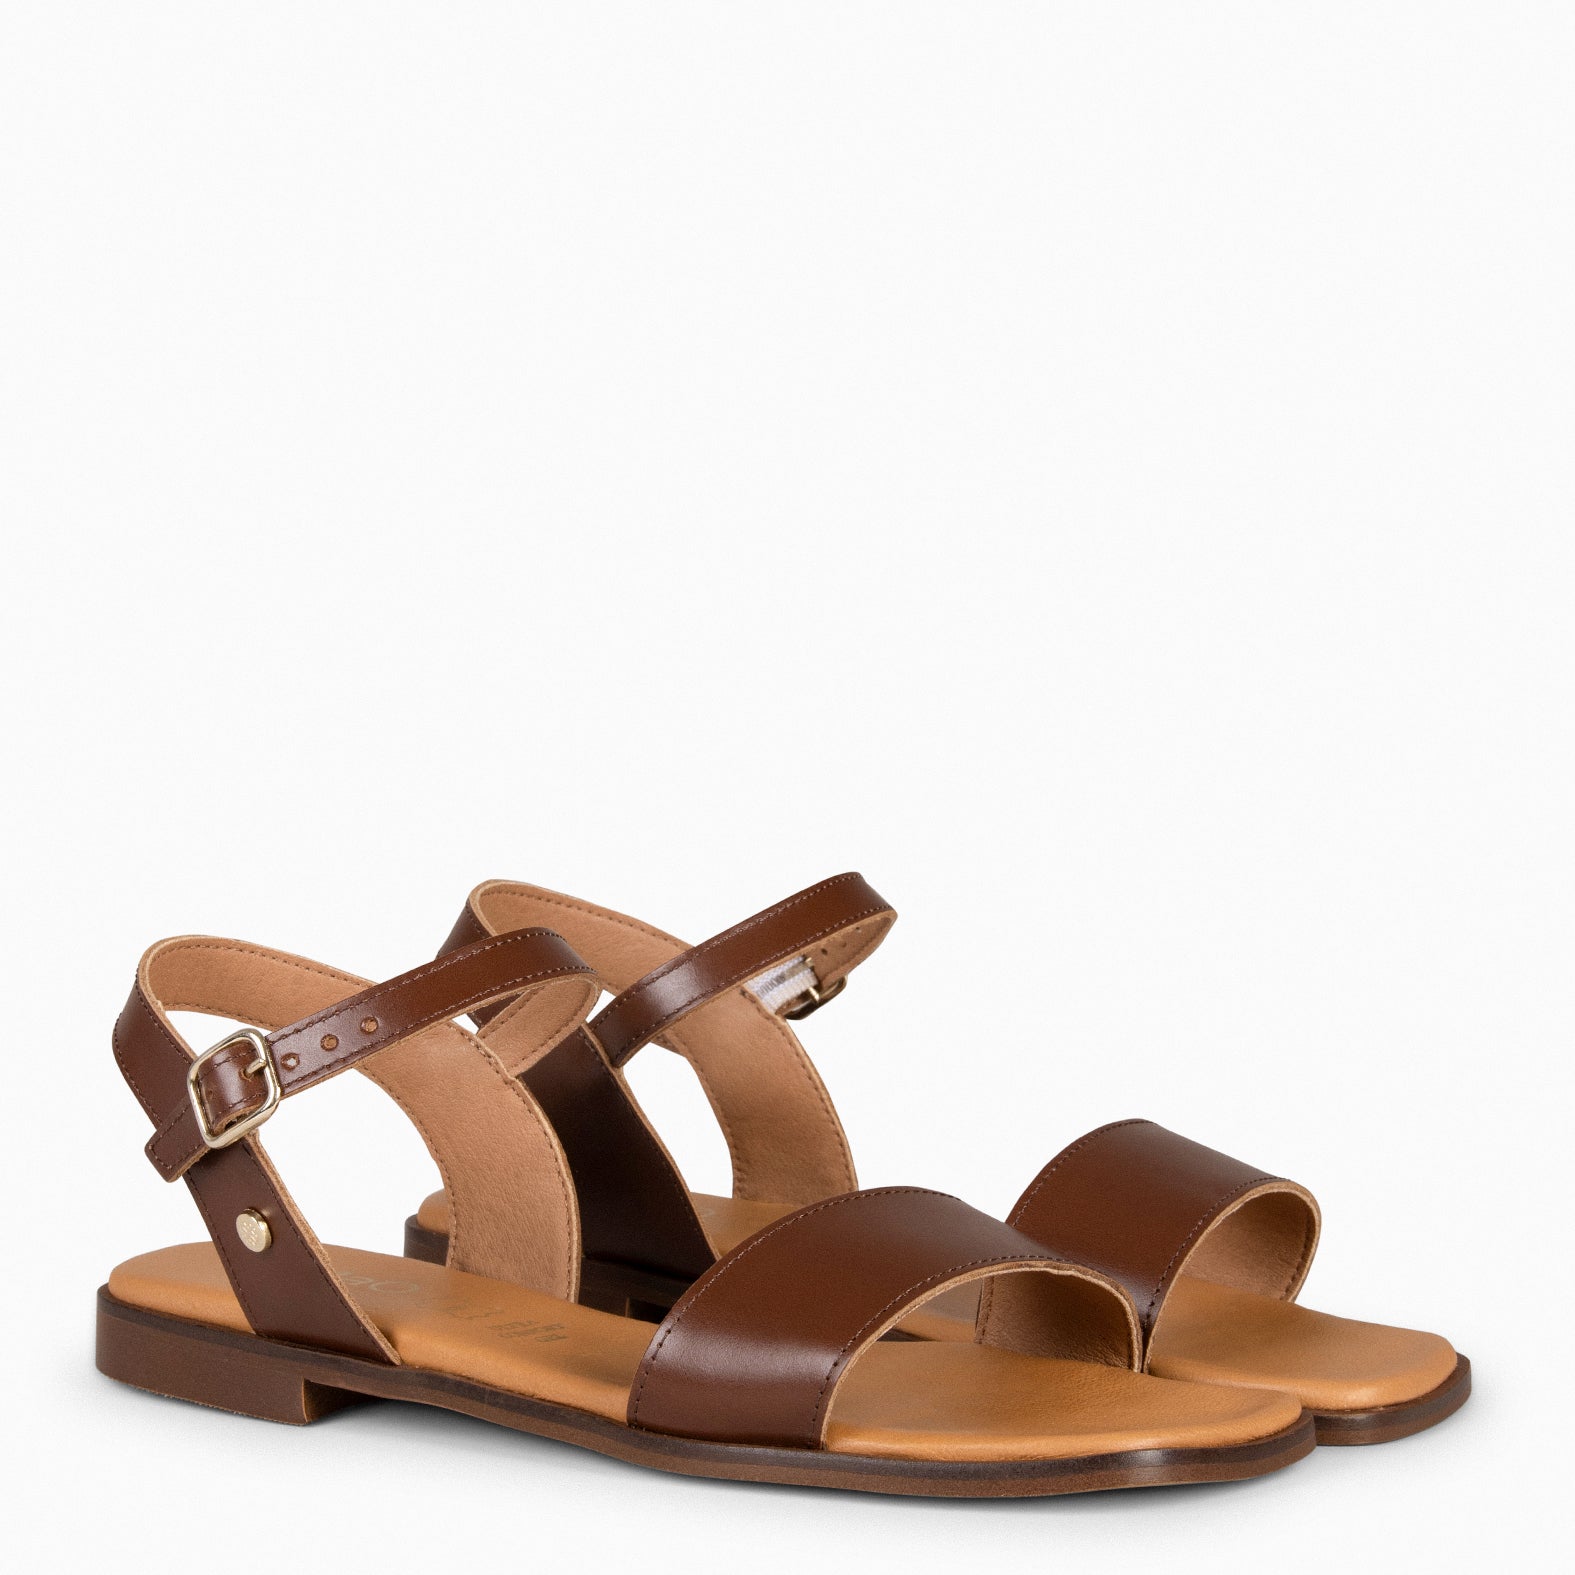 SANTORINI - BROWN Flat Sandals